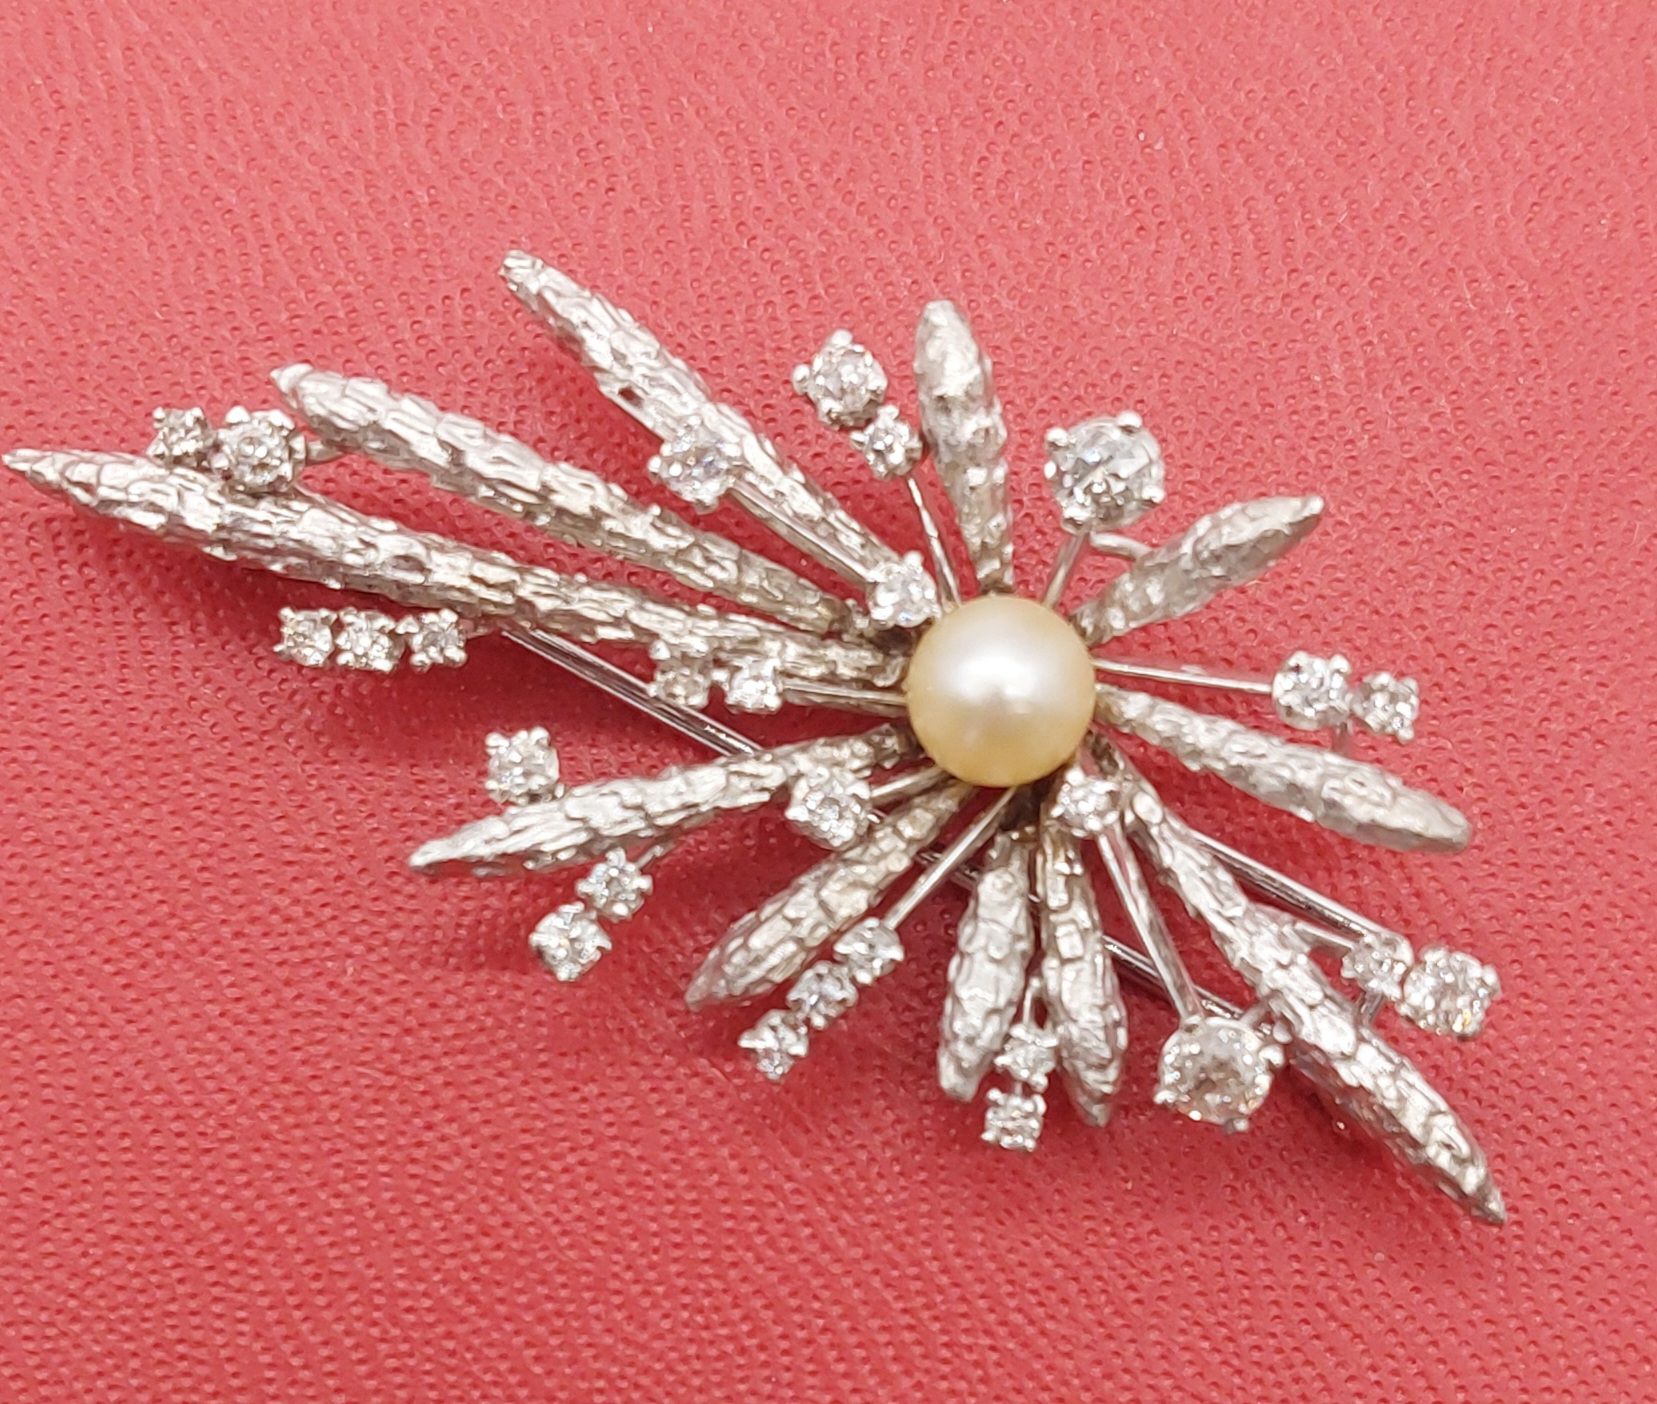 Null Brosche aus Weißgold und Diamanten, verziert mit einer Perle

BG: 13,70 g